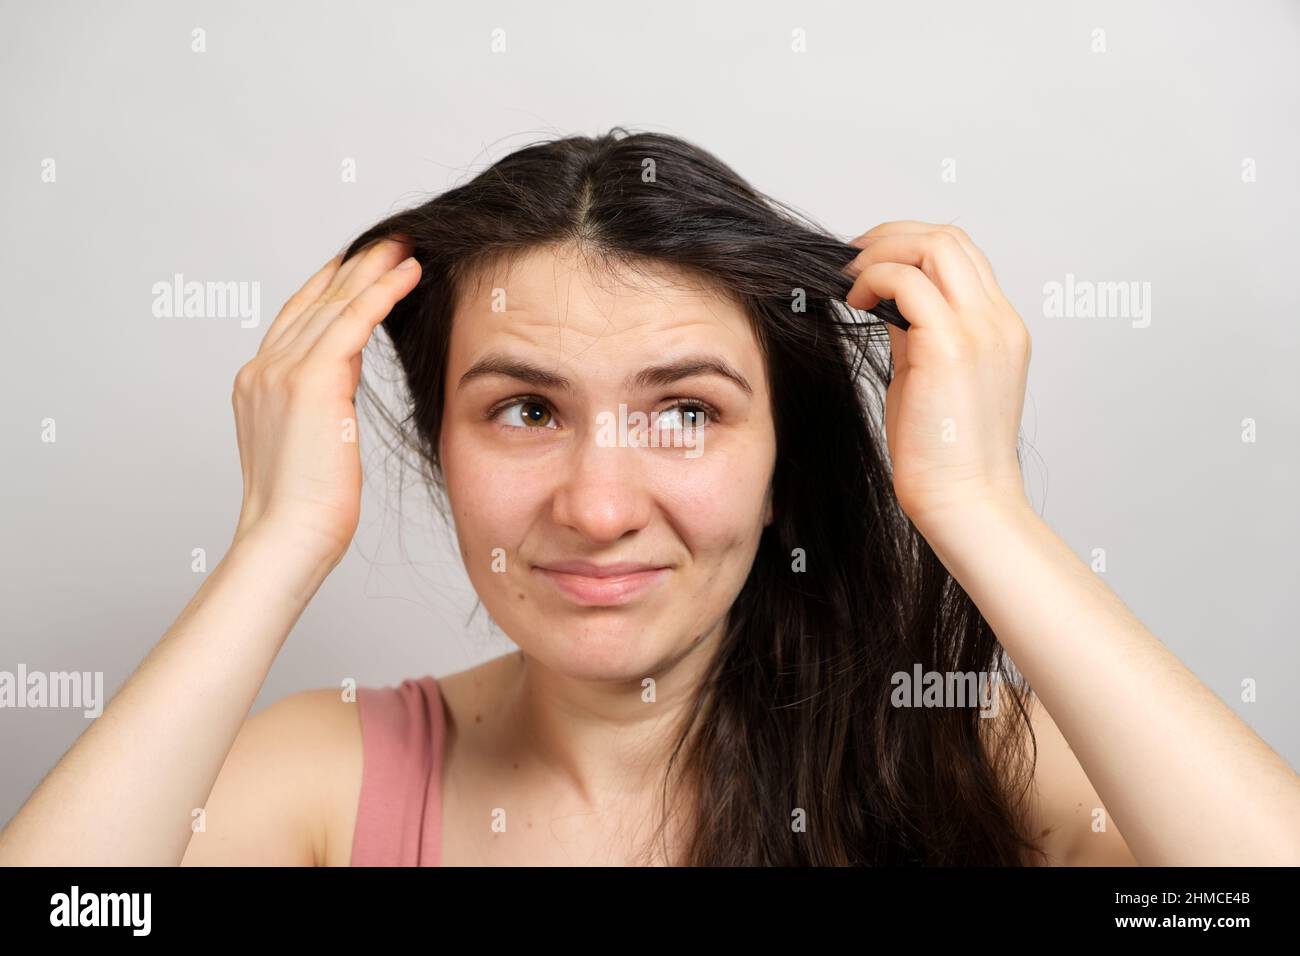 Una bella donna bruna senza trucco con capelli sporchi oleosi tiene le mani sulla testa con uno sguardo insoddisfatto Foto Stock